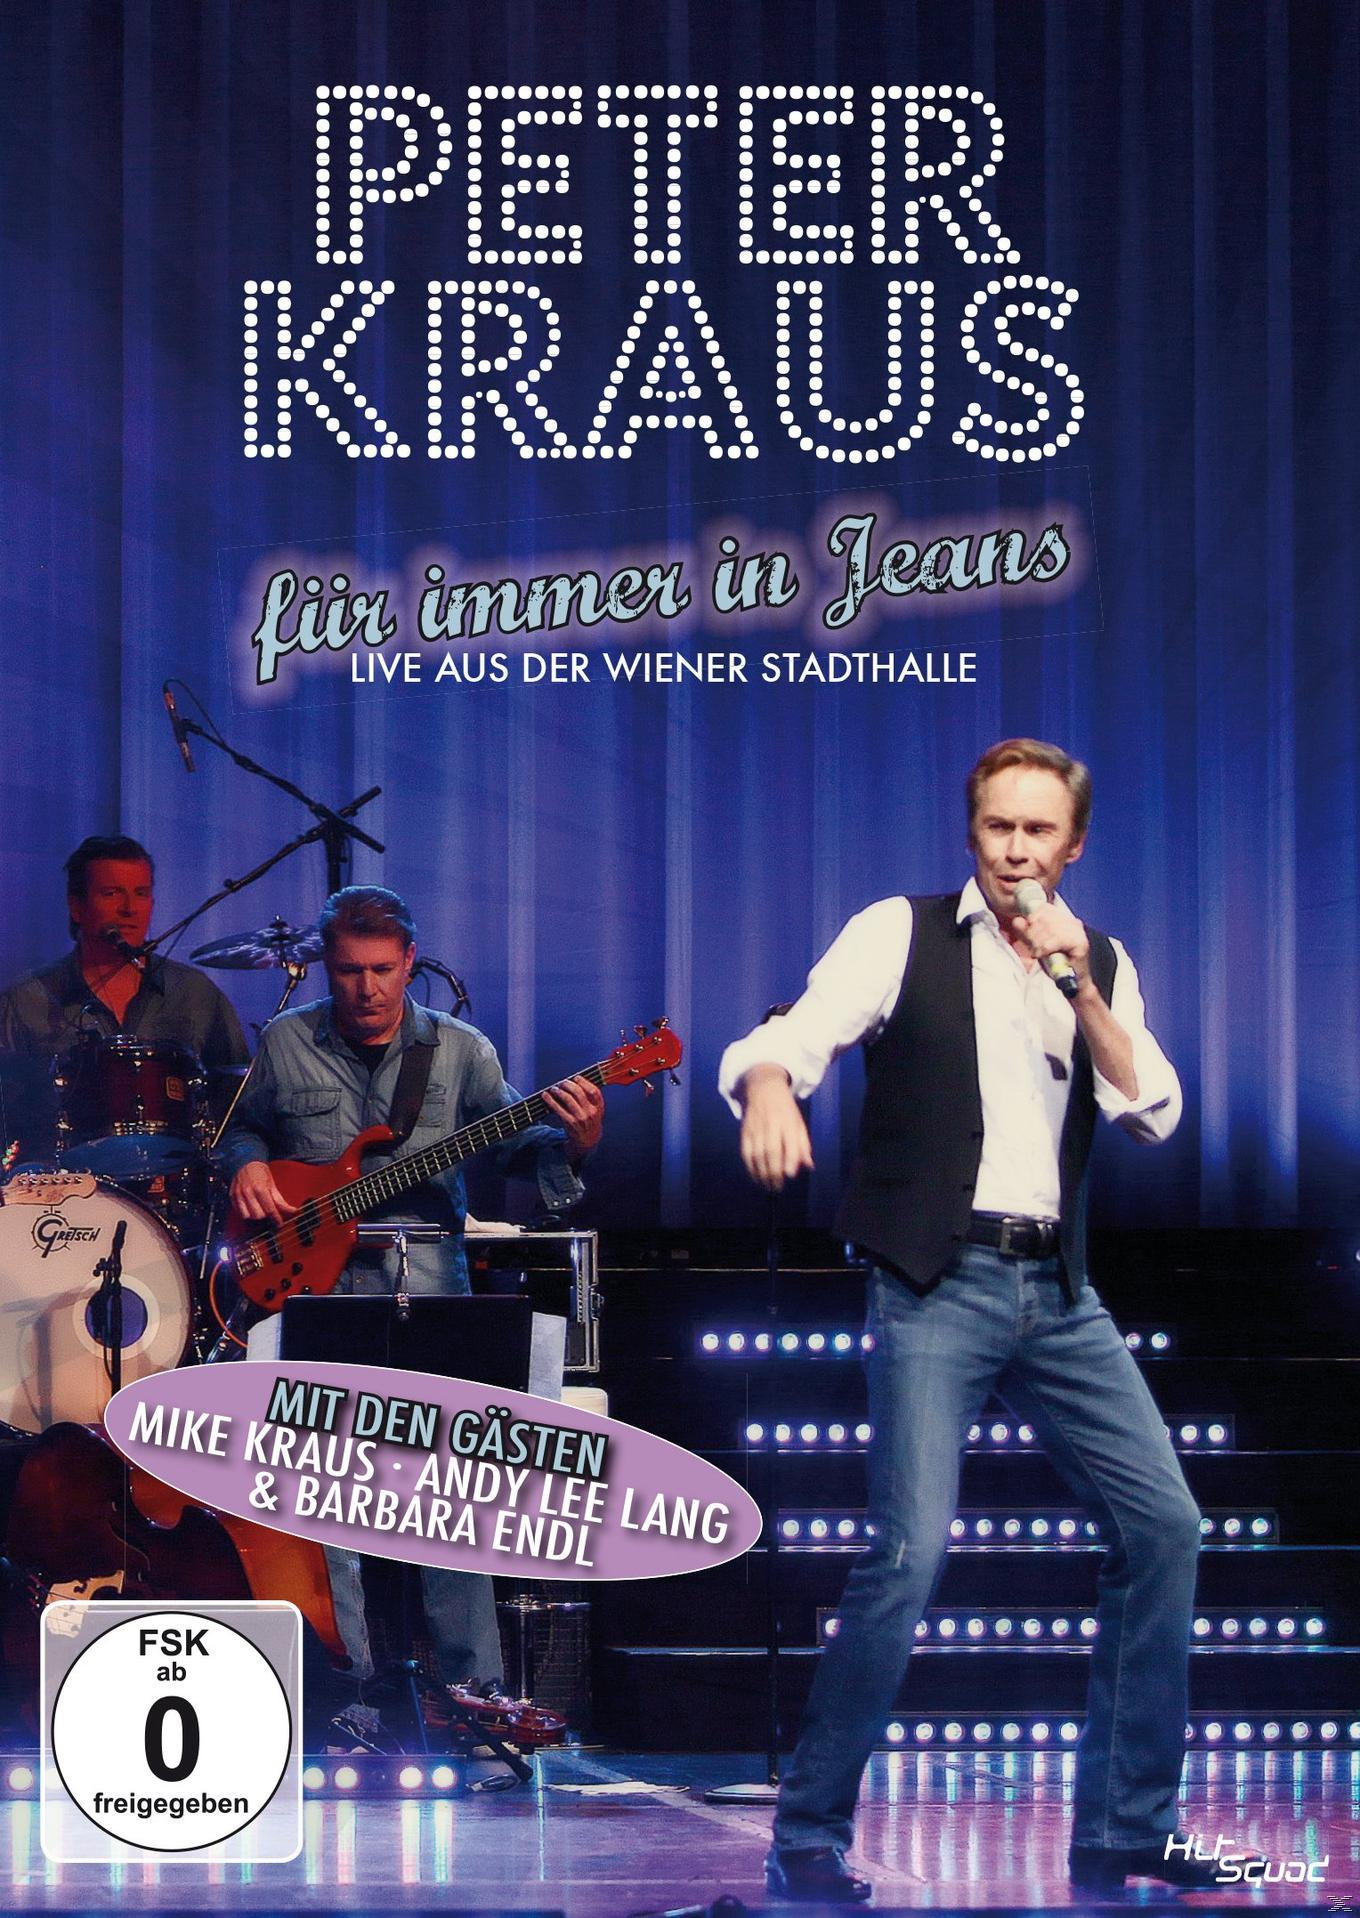 Peter Kraus, All Star Band, In Immer Moonlight Peter Sugarbabies - Jeans Kraus Für - - Grosse (DVD) Dancers, Die Revue